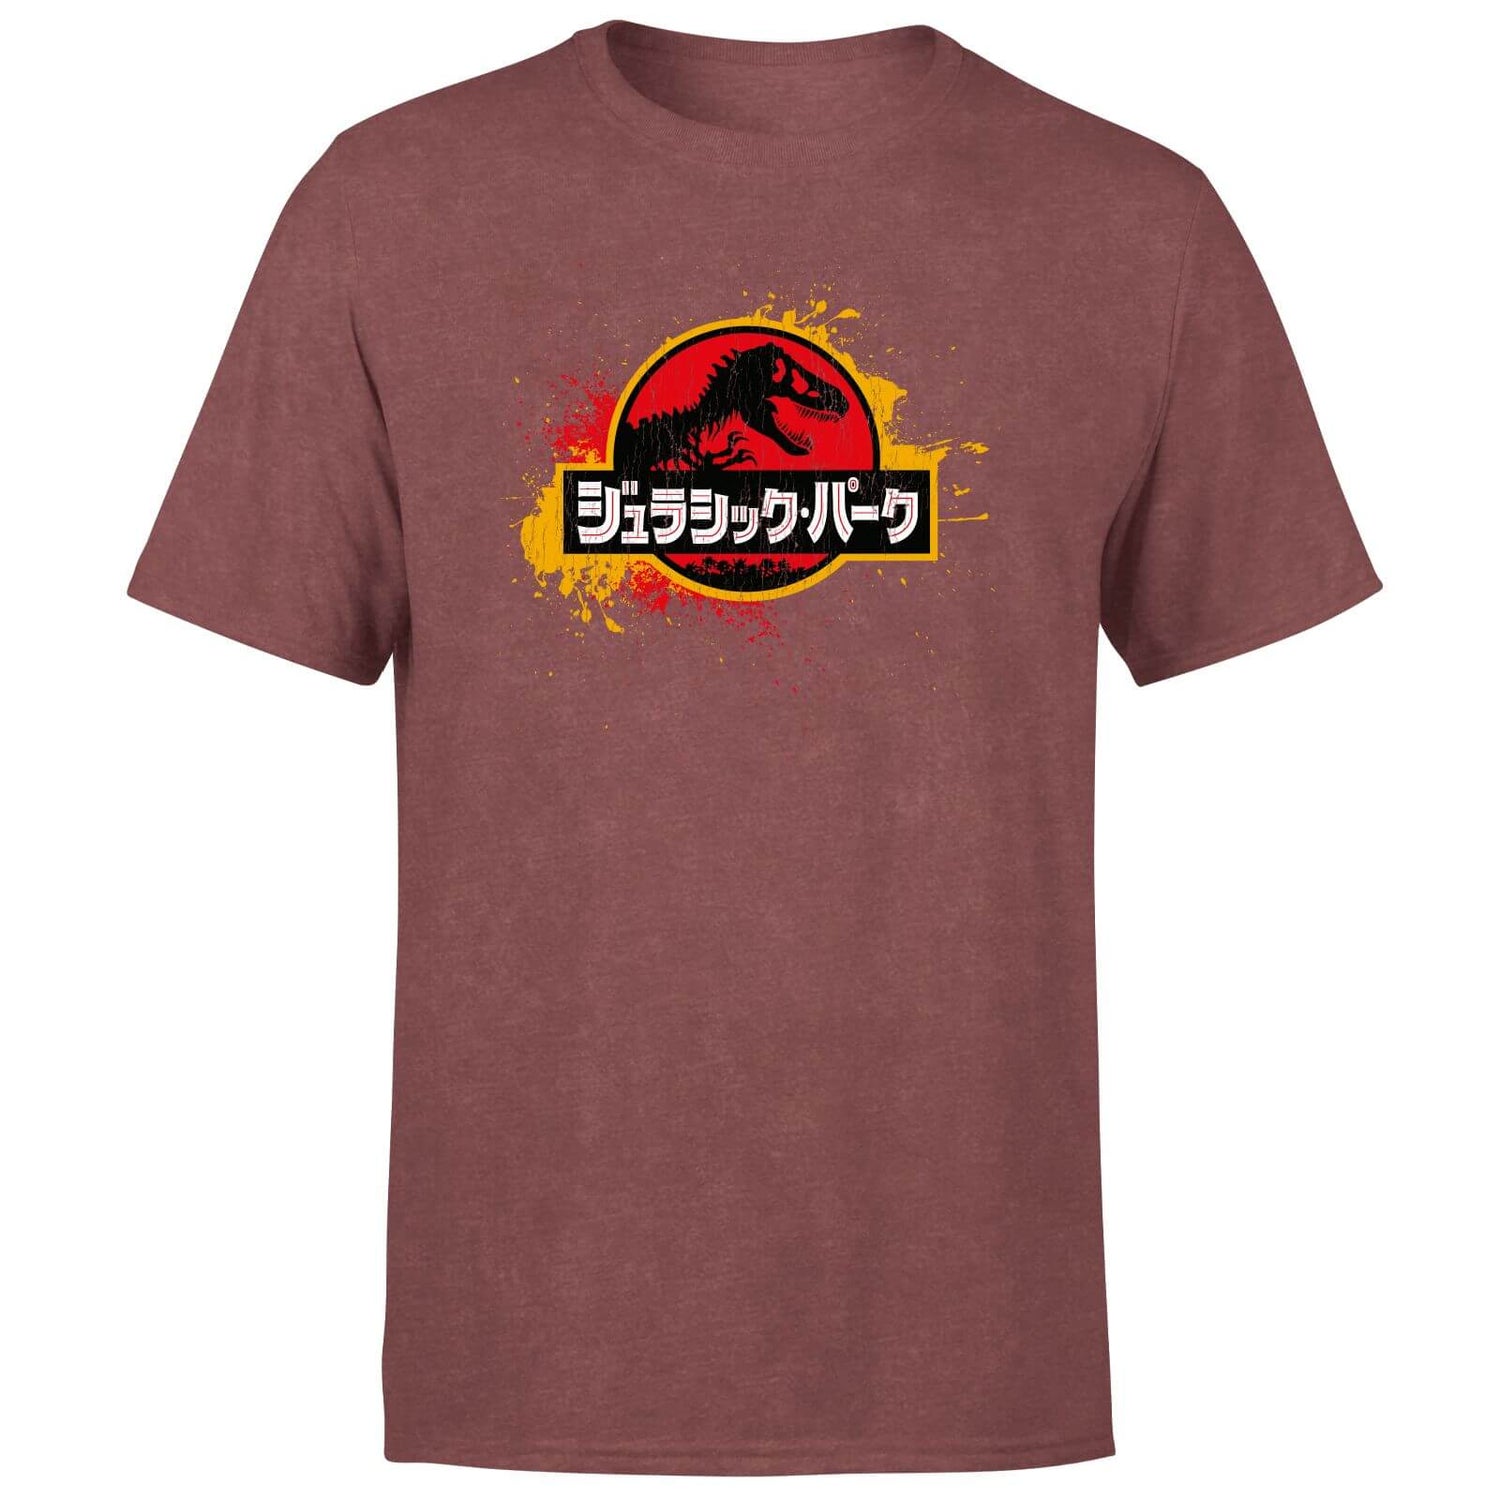 Jurassic Park Men's T-Shirt - Burgundy Acid Wash